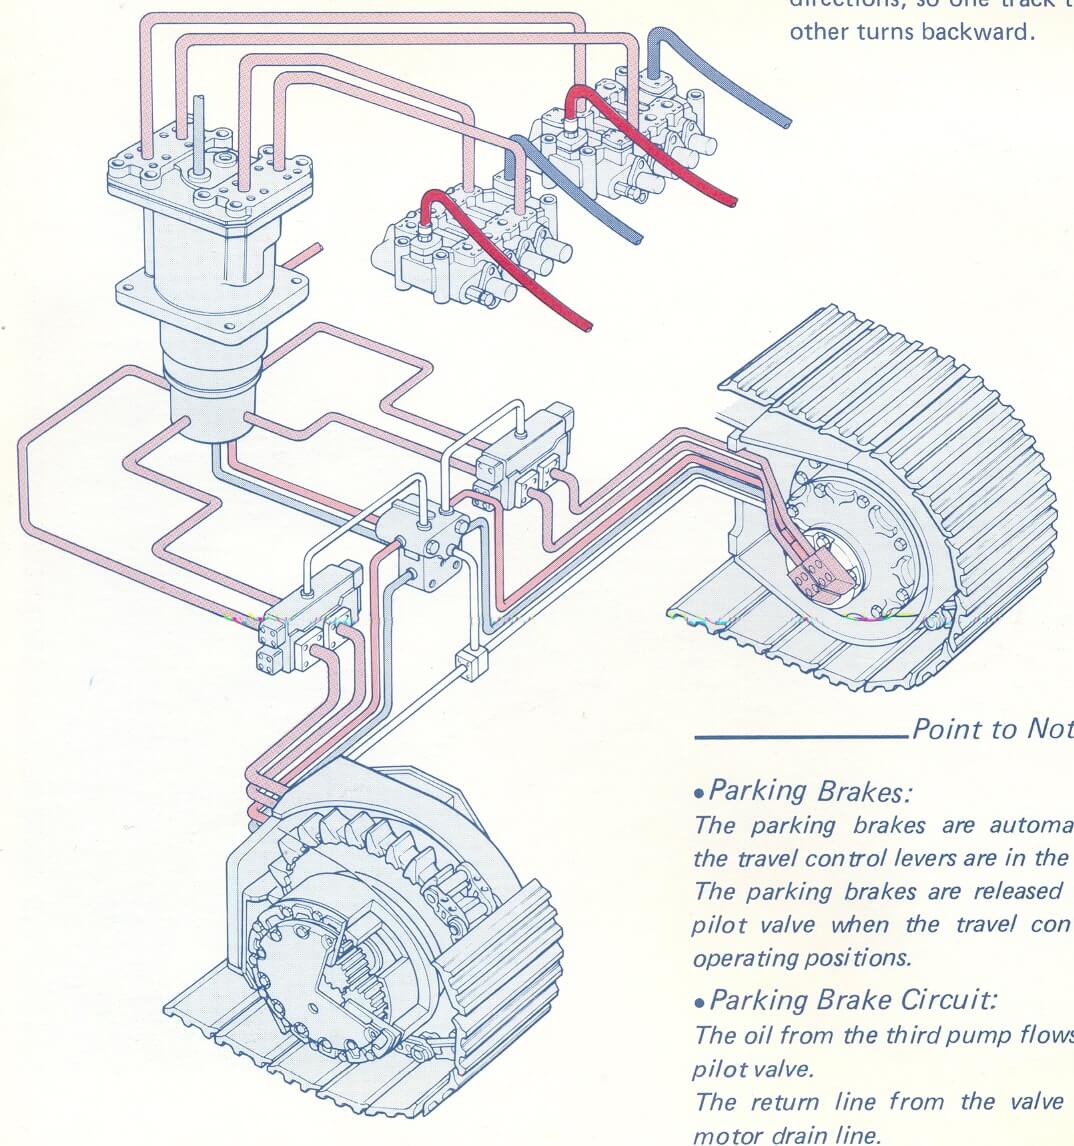 Mô tả hệ thống thủy lực của máy xúc đào